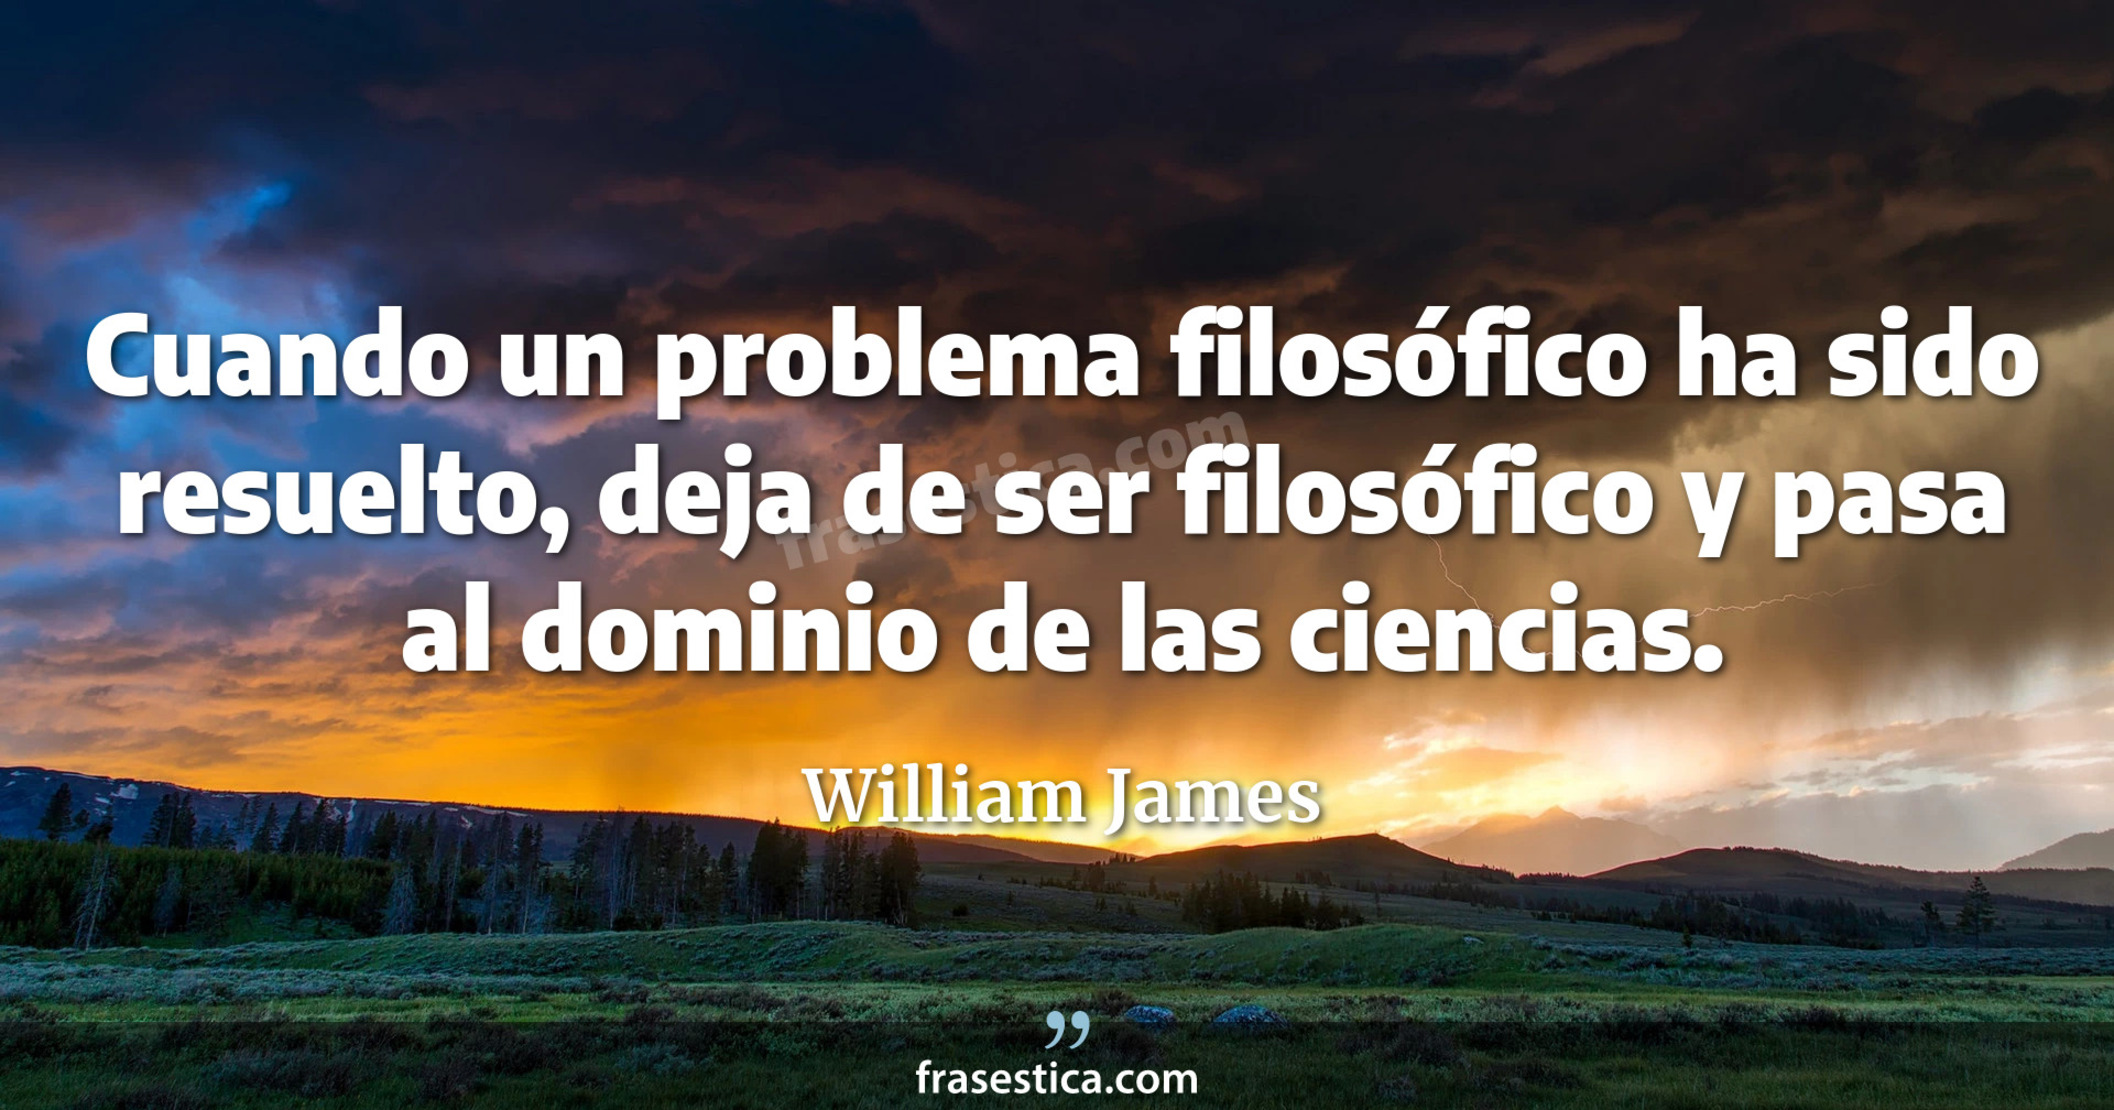 Cuando un problema filosófico ha sido resuelto, deja de ser filosófico y pasa al dominio de las ciencias. - William James